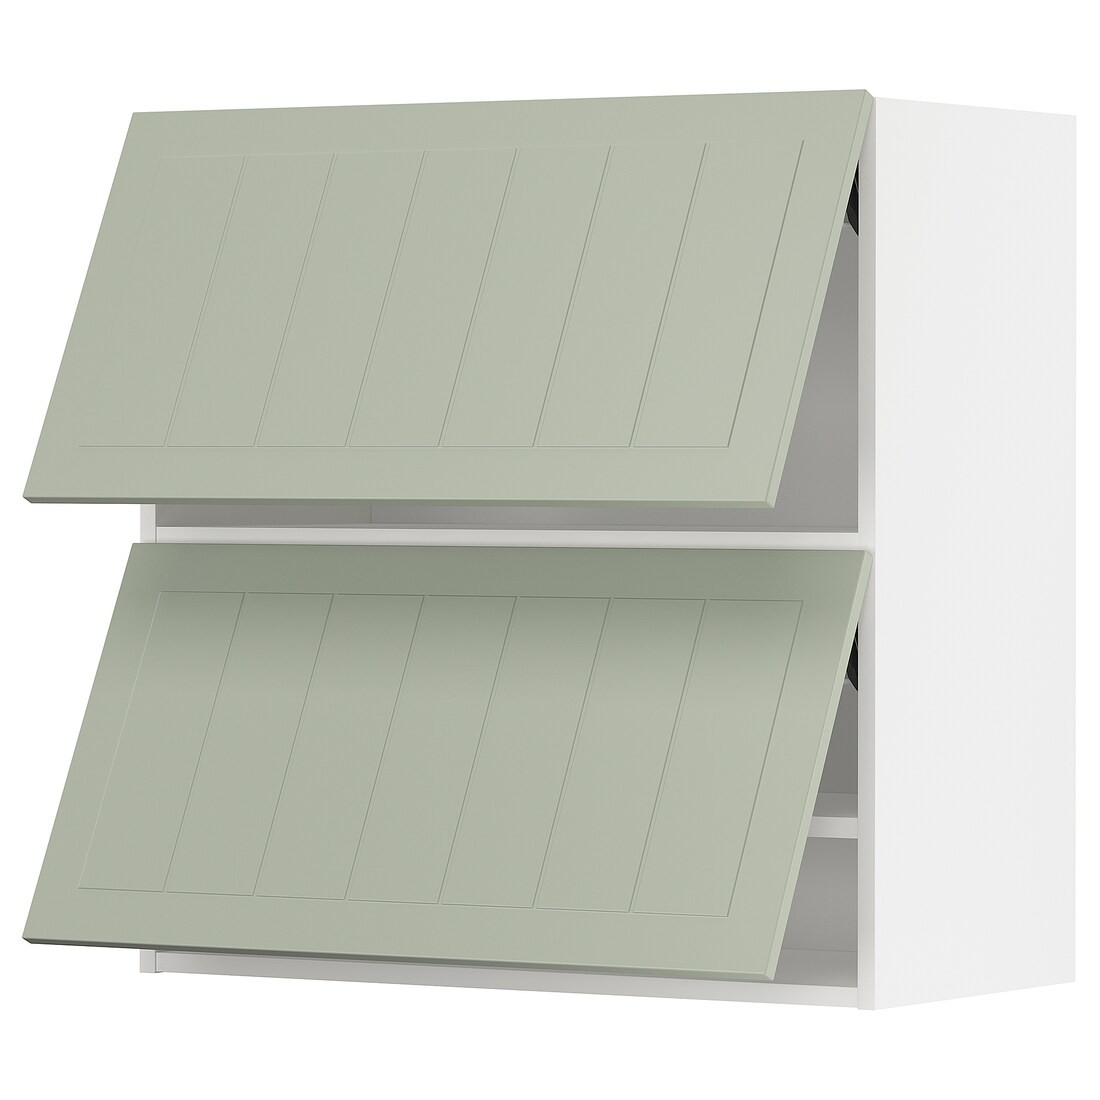 METOD МЕТОД Навесной горизонтальный шкаф / 2 двери, белый / Stensund светло-зеленый, 80x80 см